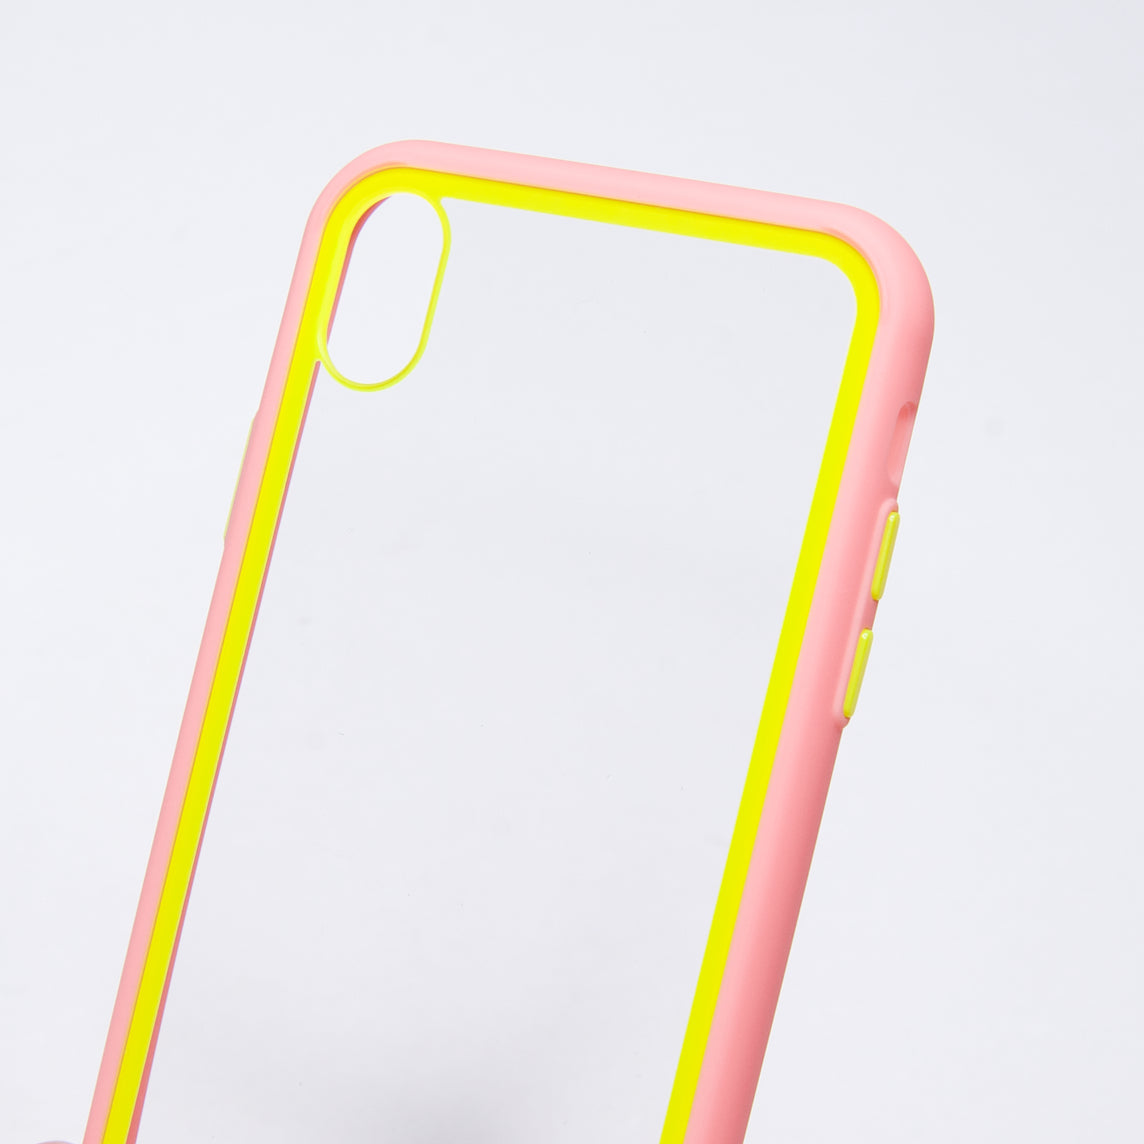 Estuche el rey iphone xr marco color transparente / rosado